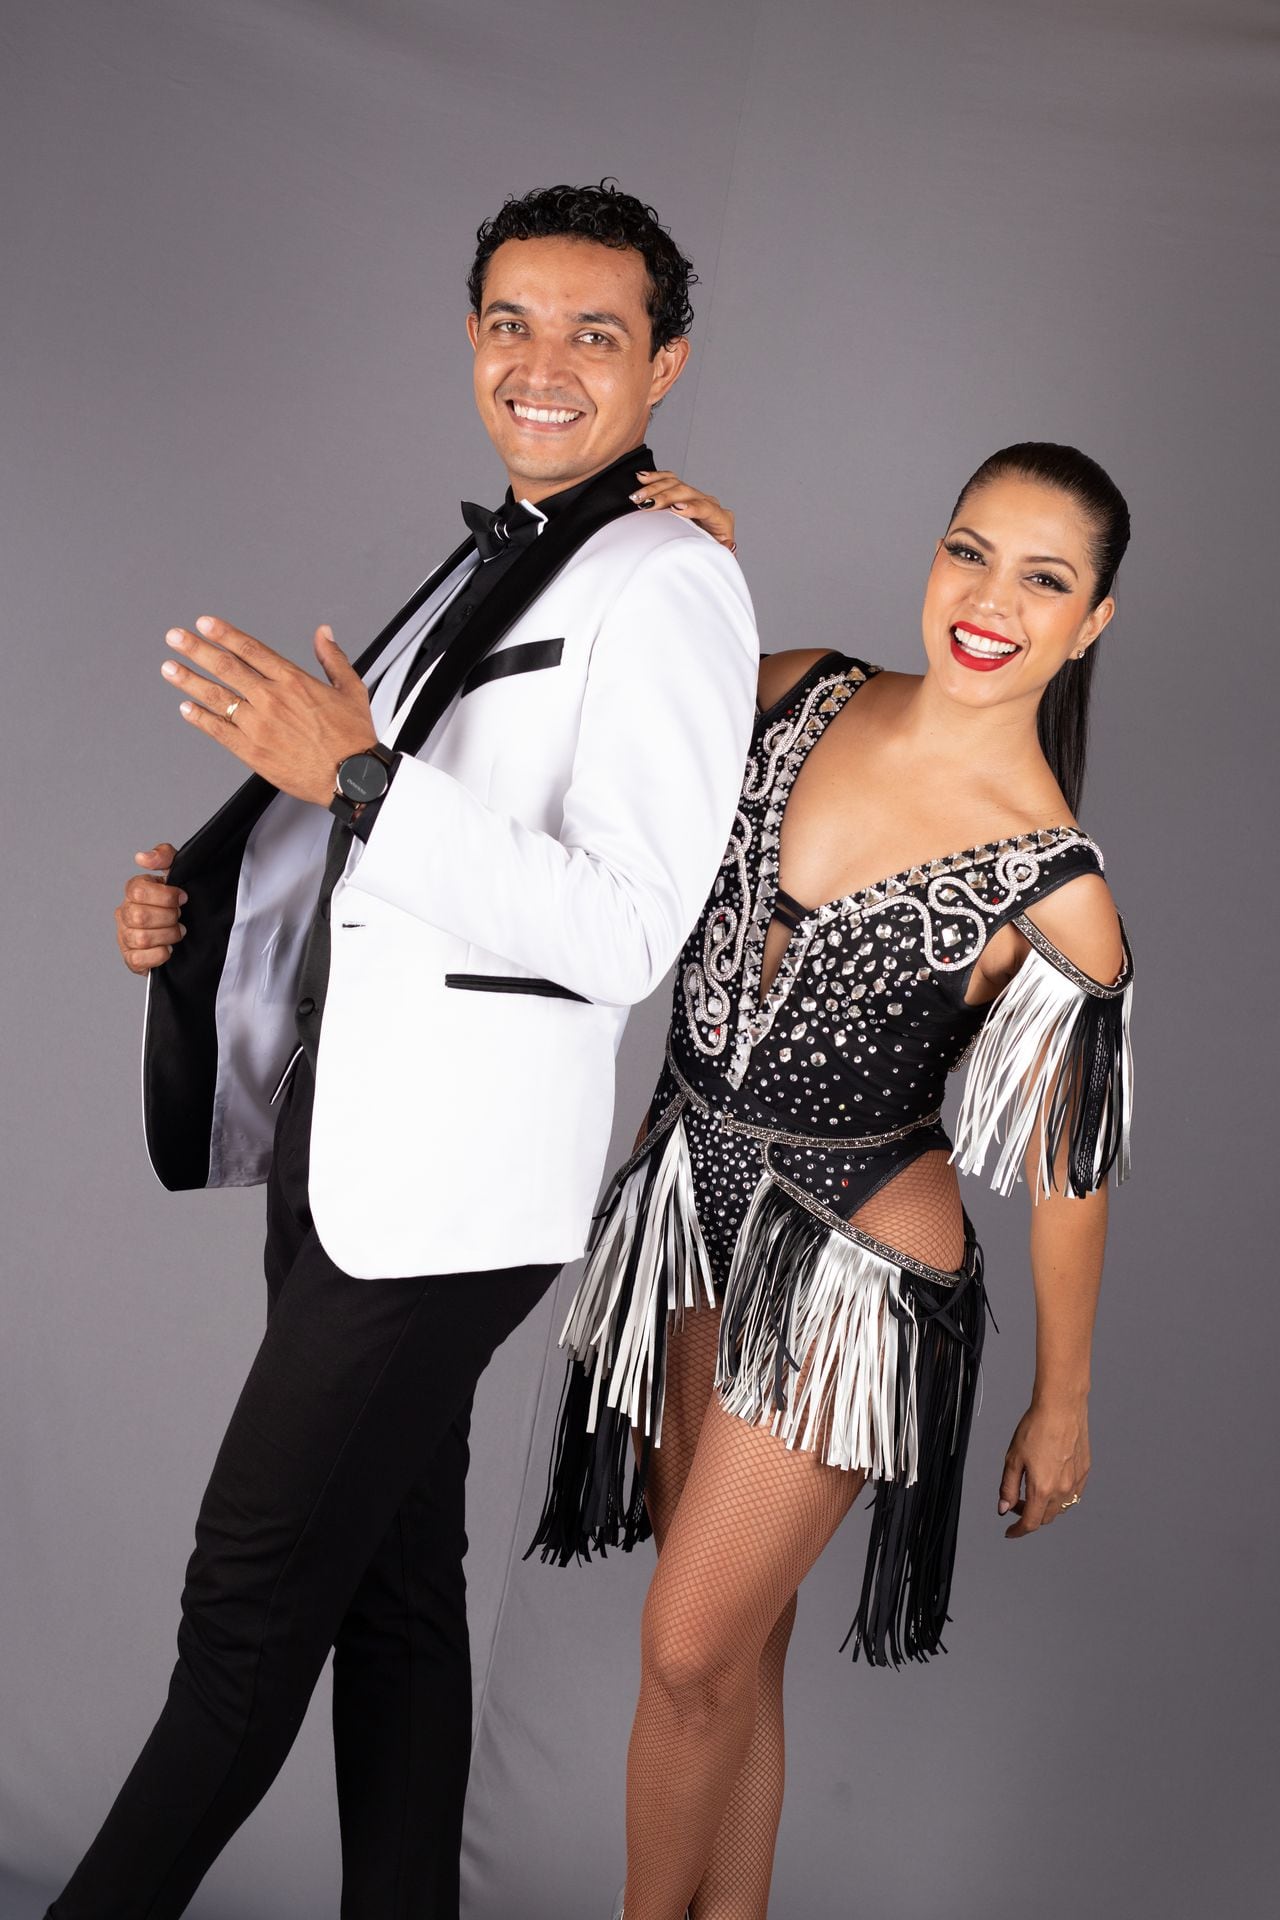 Brando Pérez y Viviana Vargas son bailarines, líderes de escuelas de baile y esposos.